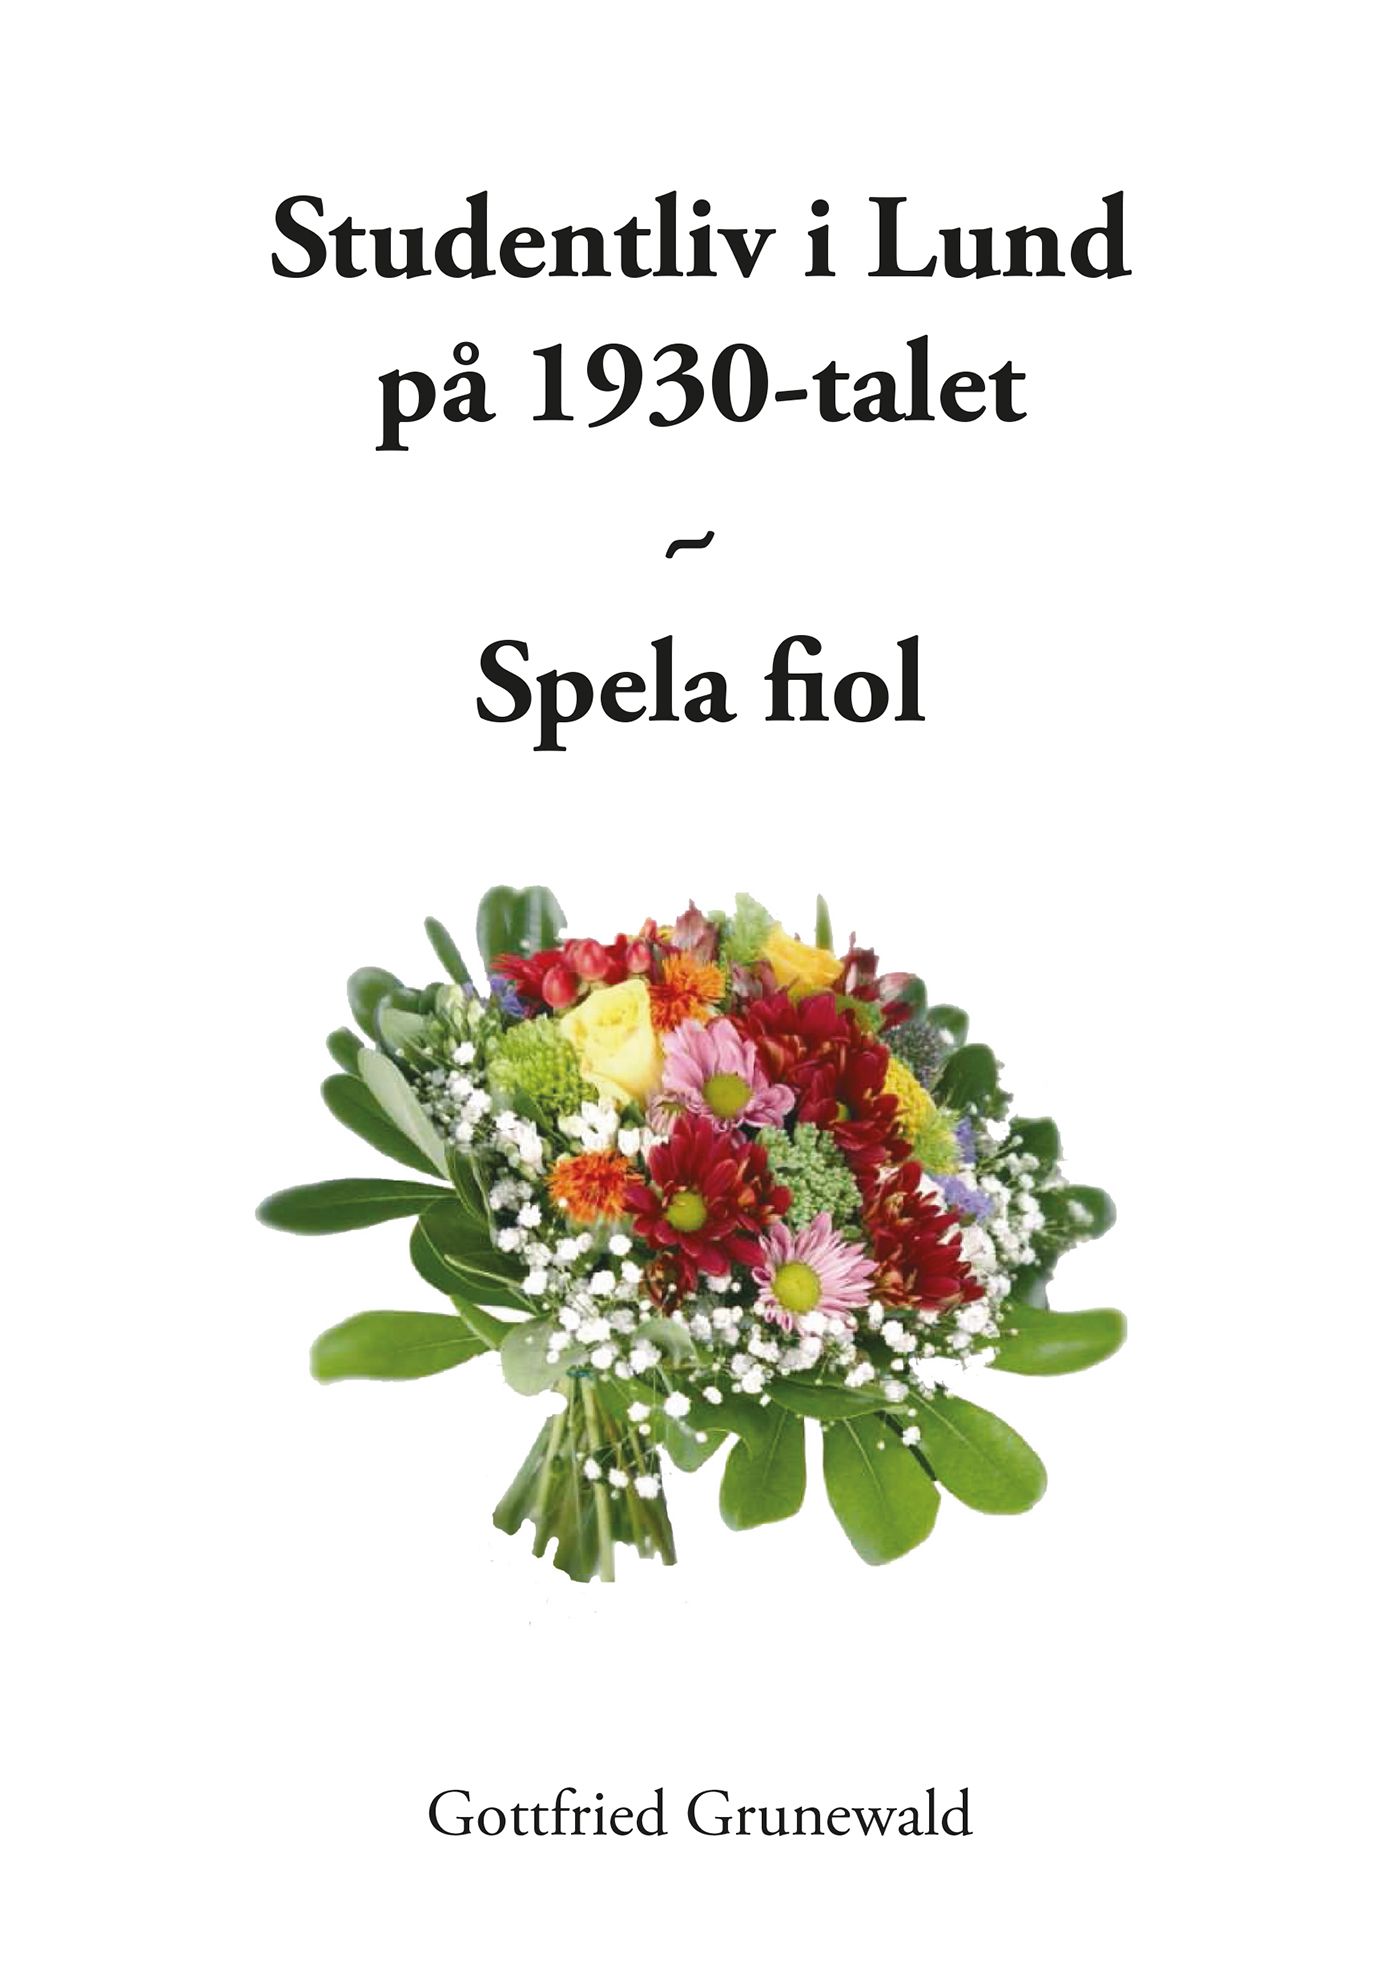 Studentliv i Lund på 1930-talet - Spela fiol, e-bok av Gottfried Grunewald